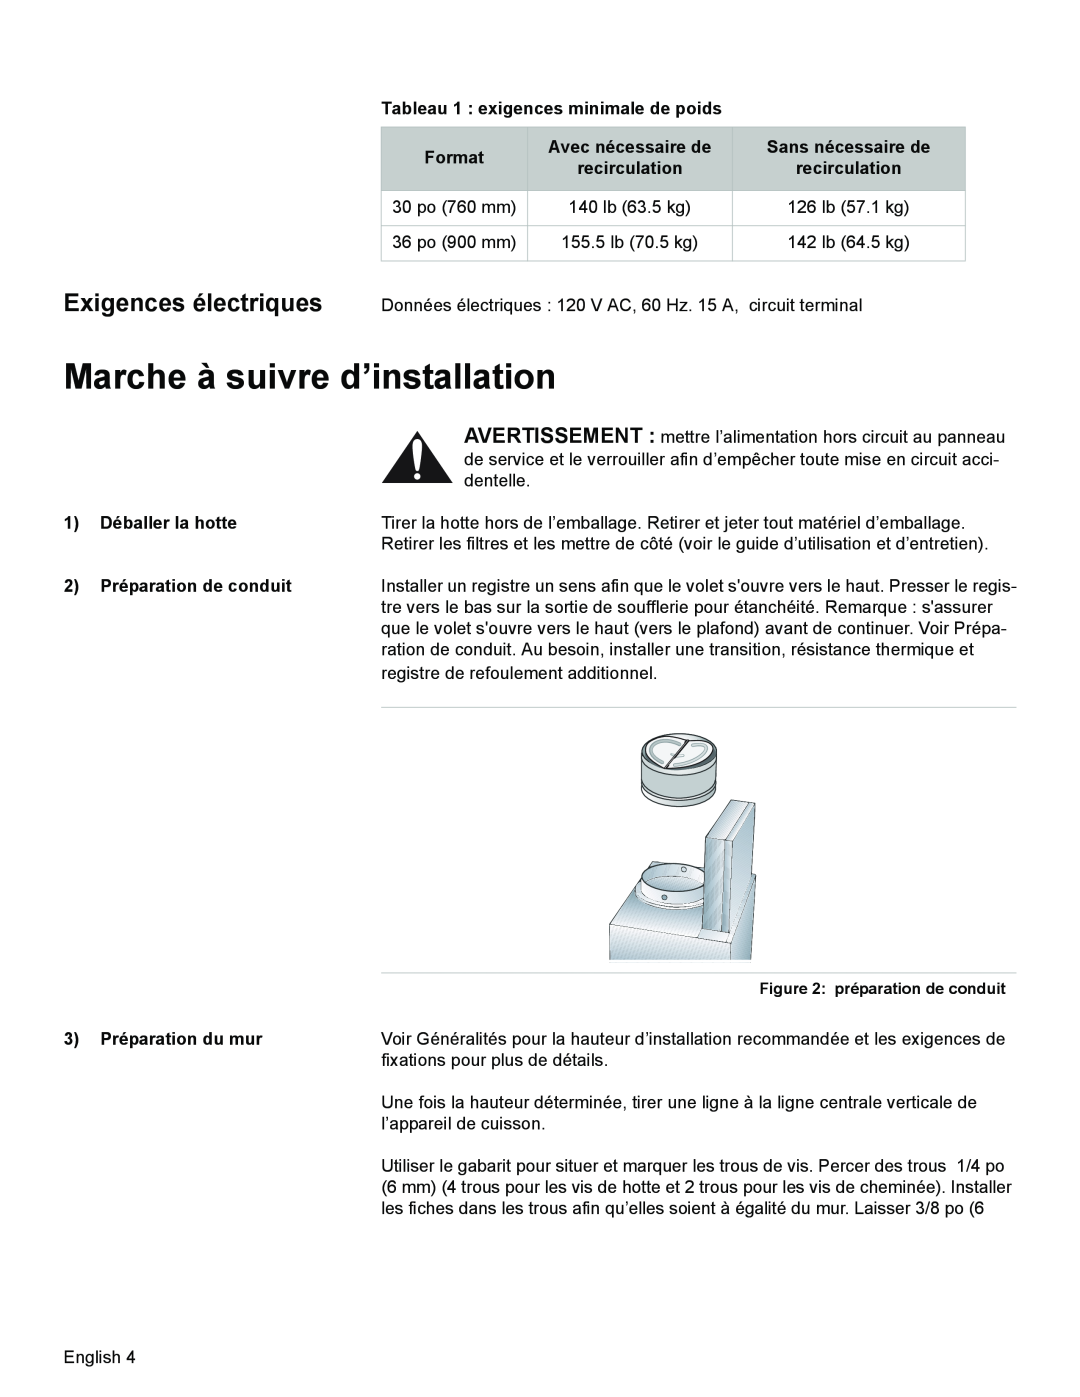 Bosch Appliances DKE94 Marche à suivre d’installation, Exigences électriques, Tableau 1 exigences minimale de poids 